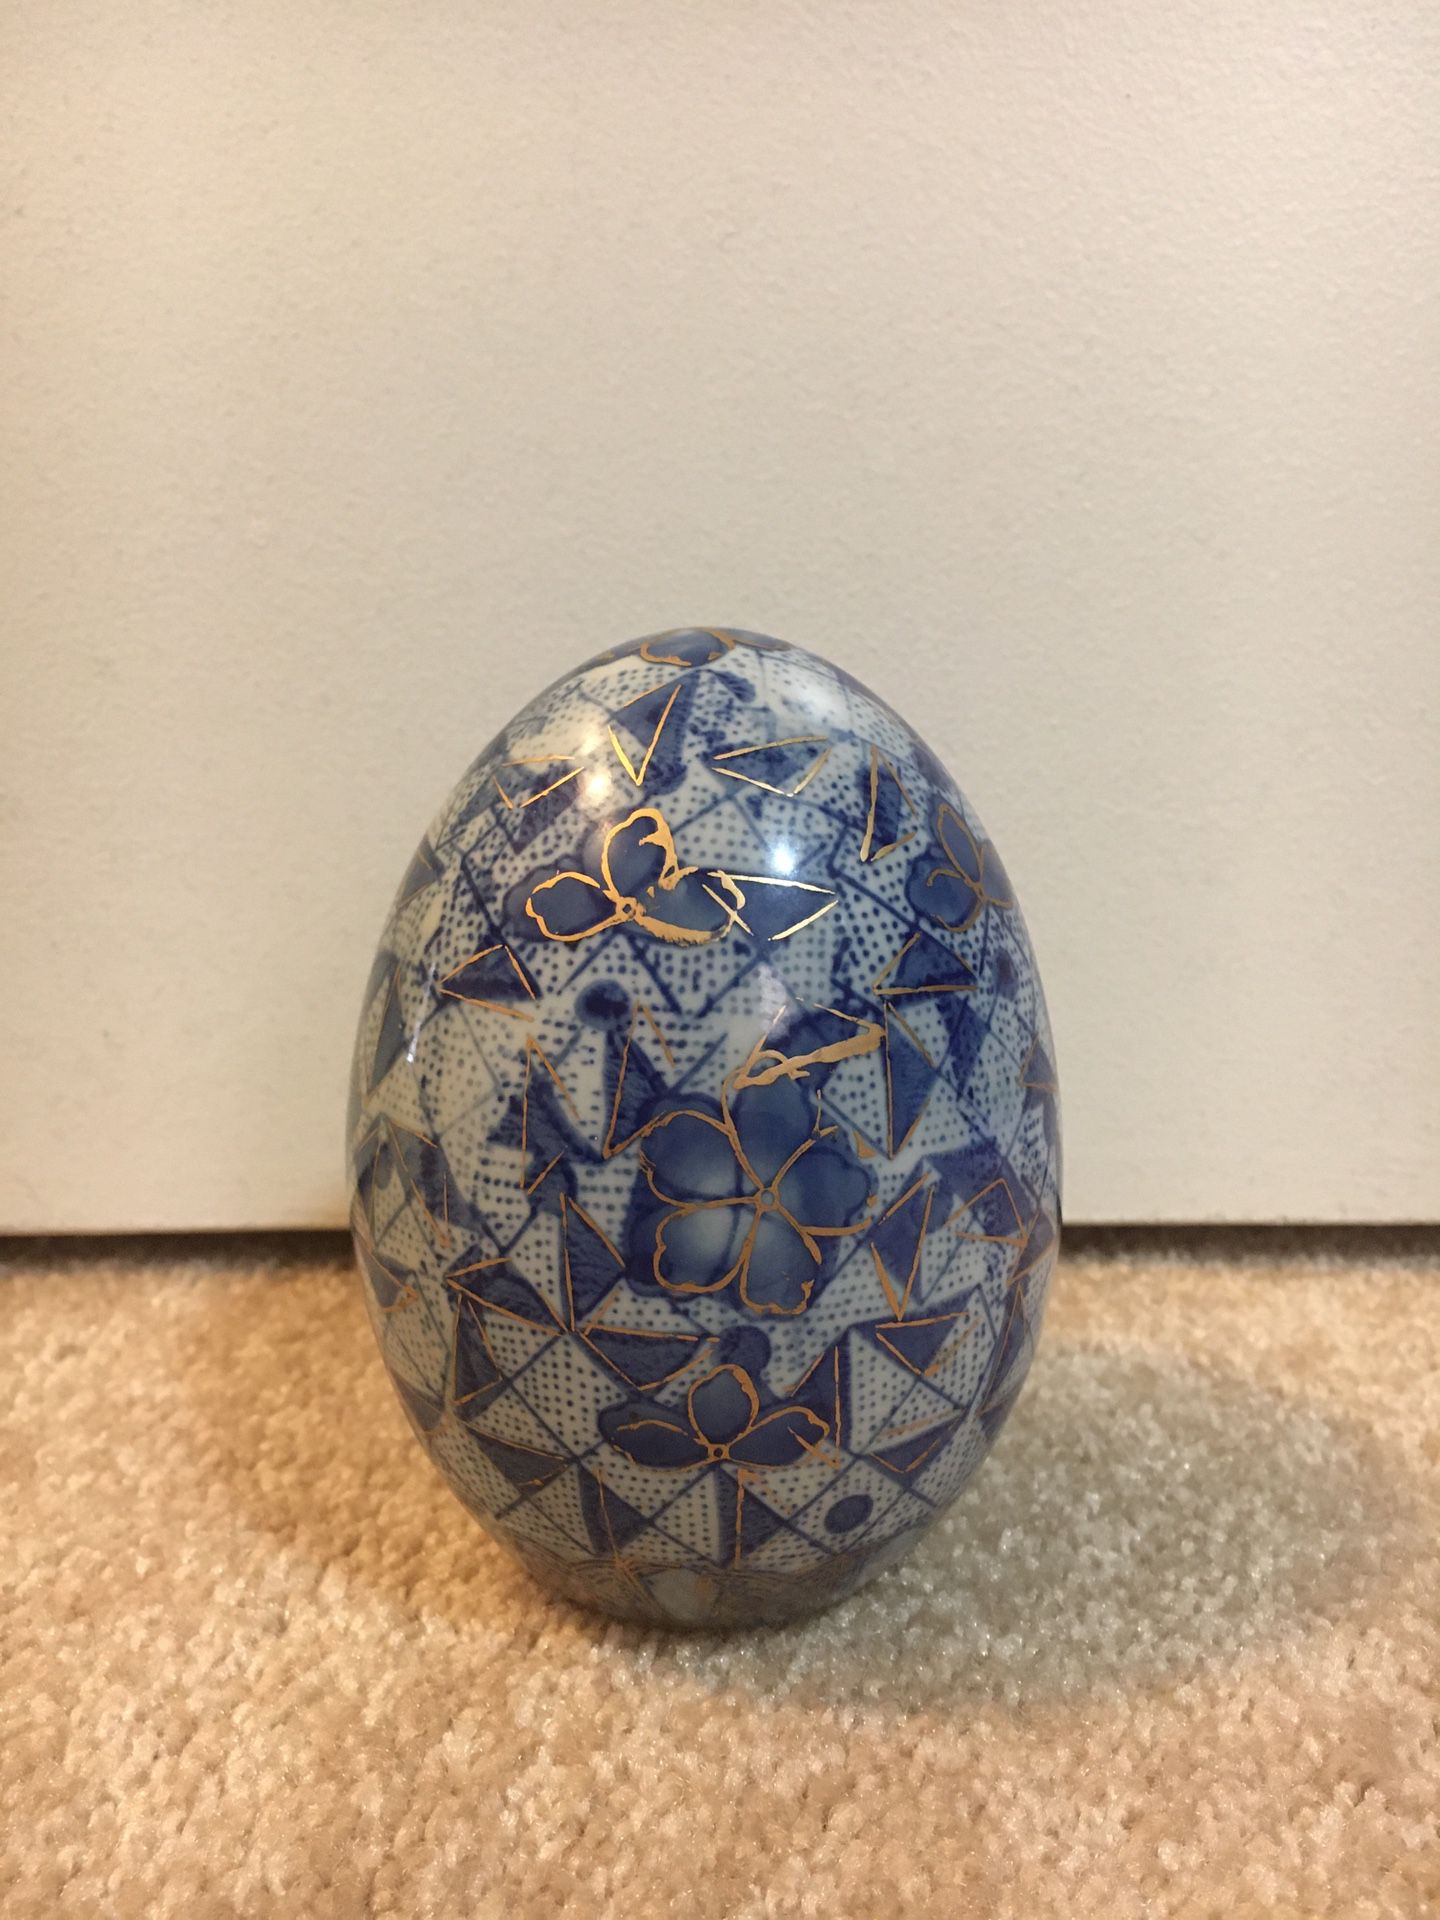 Blue, white, and gold porcelain egg